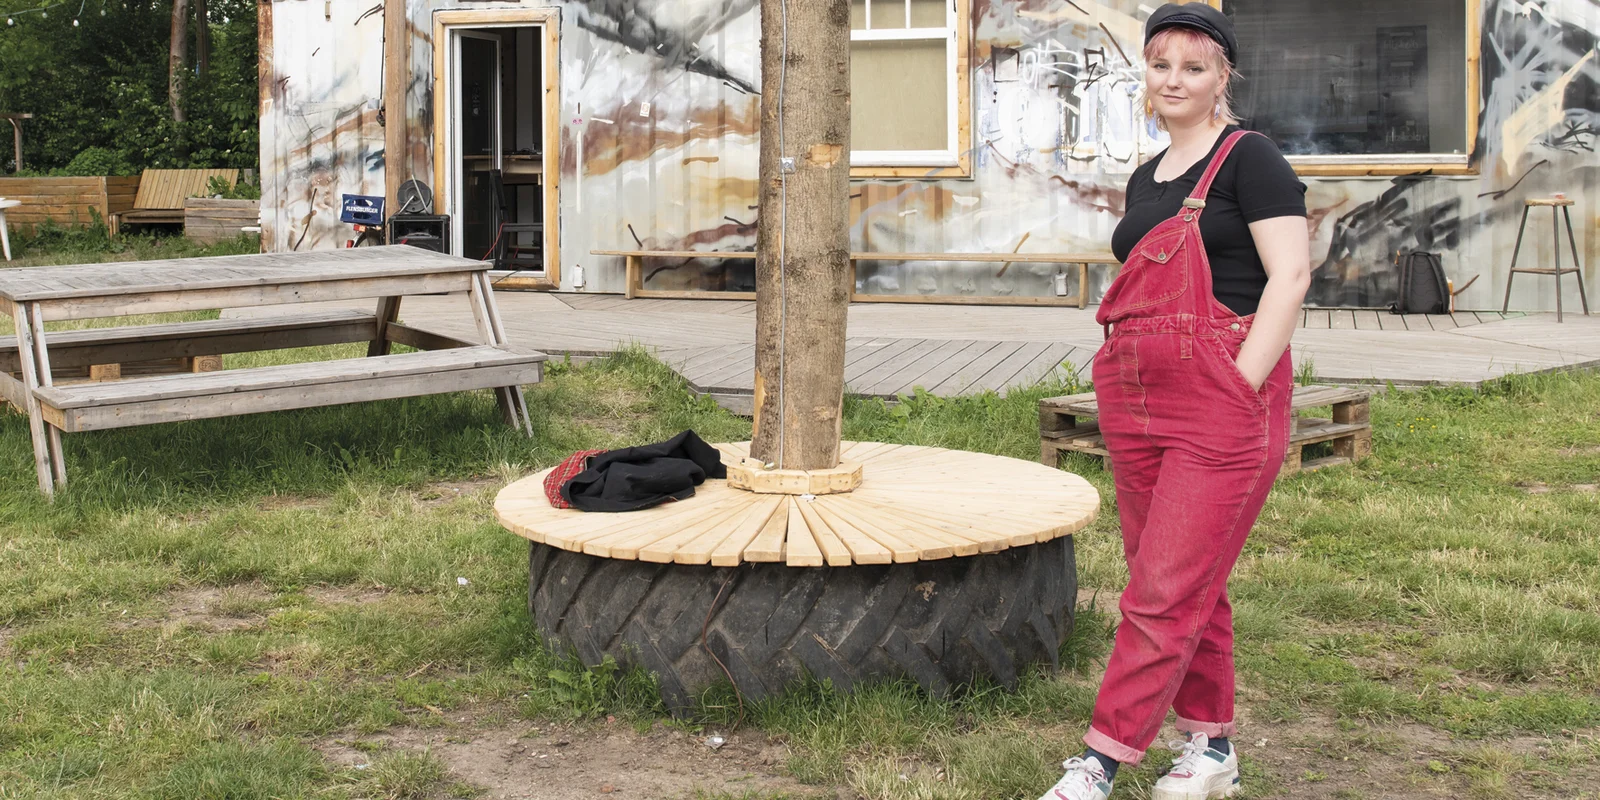 Marlin Helene steht mit überkreuzten Beinen vor einem mit Grafitti besprühtem Container, danaeben mehrere Bäume.